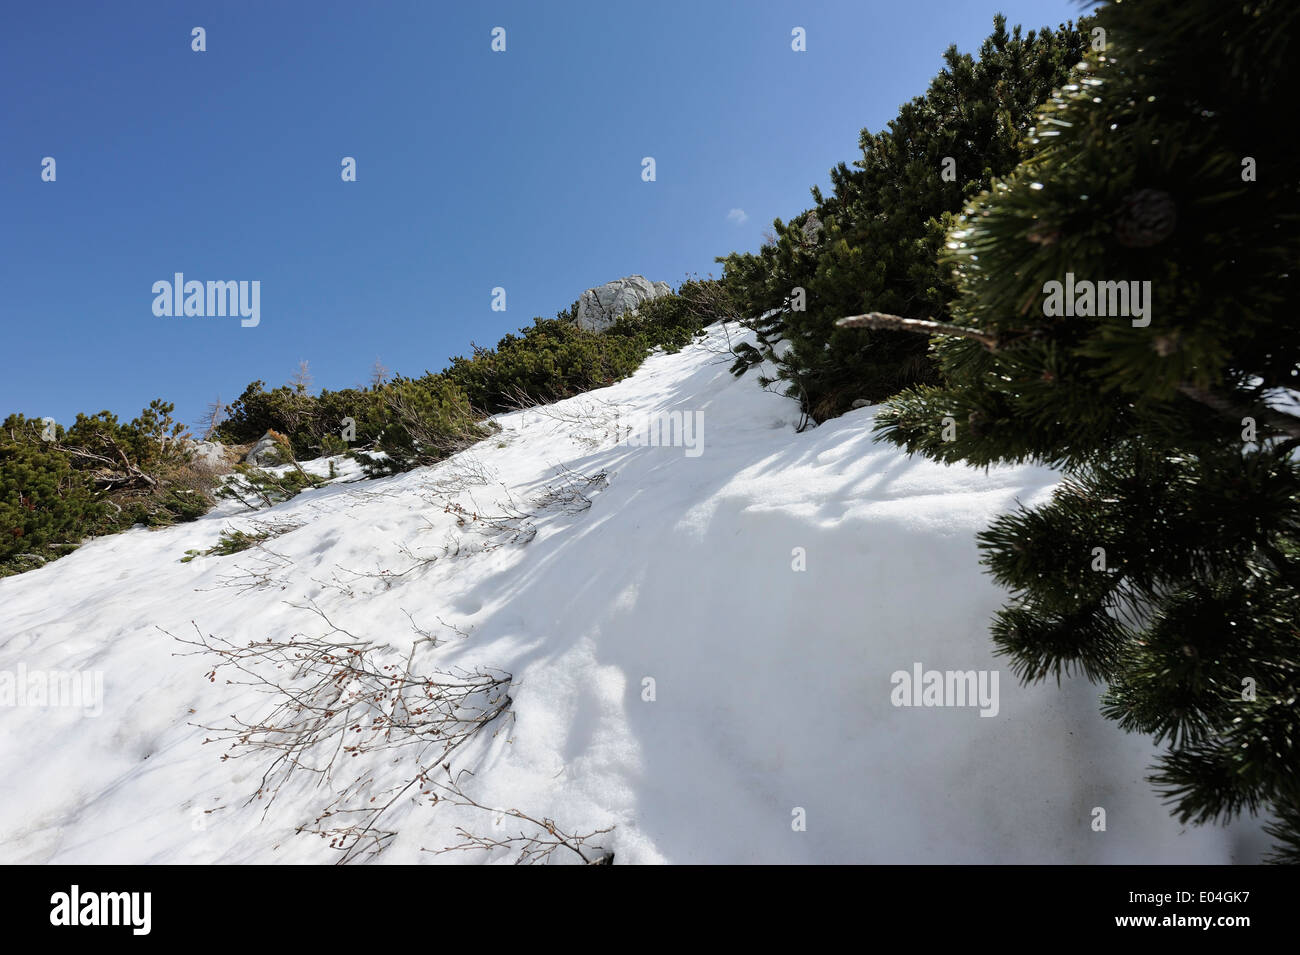 Pins de montagne sur une pente de montagne enneigée Banque D'Images